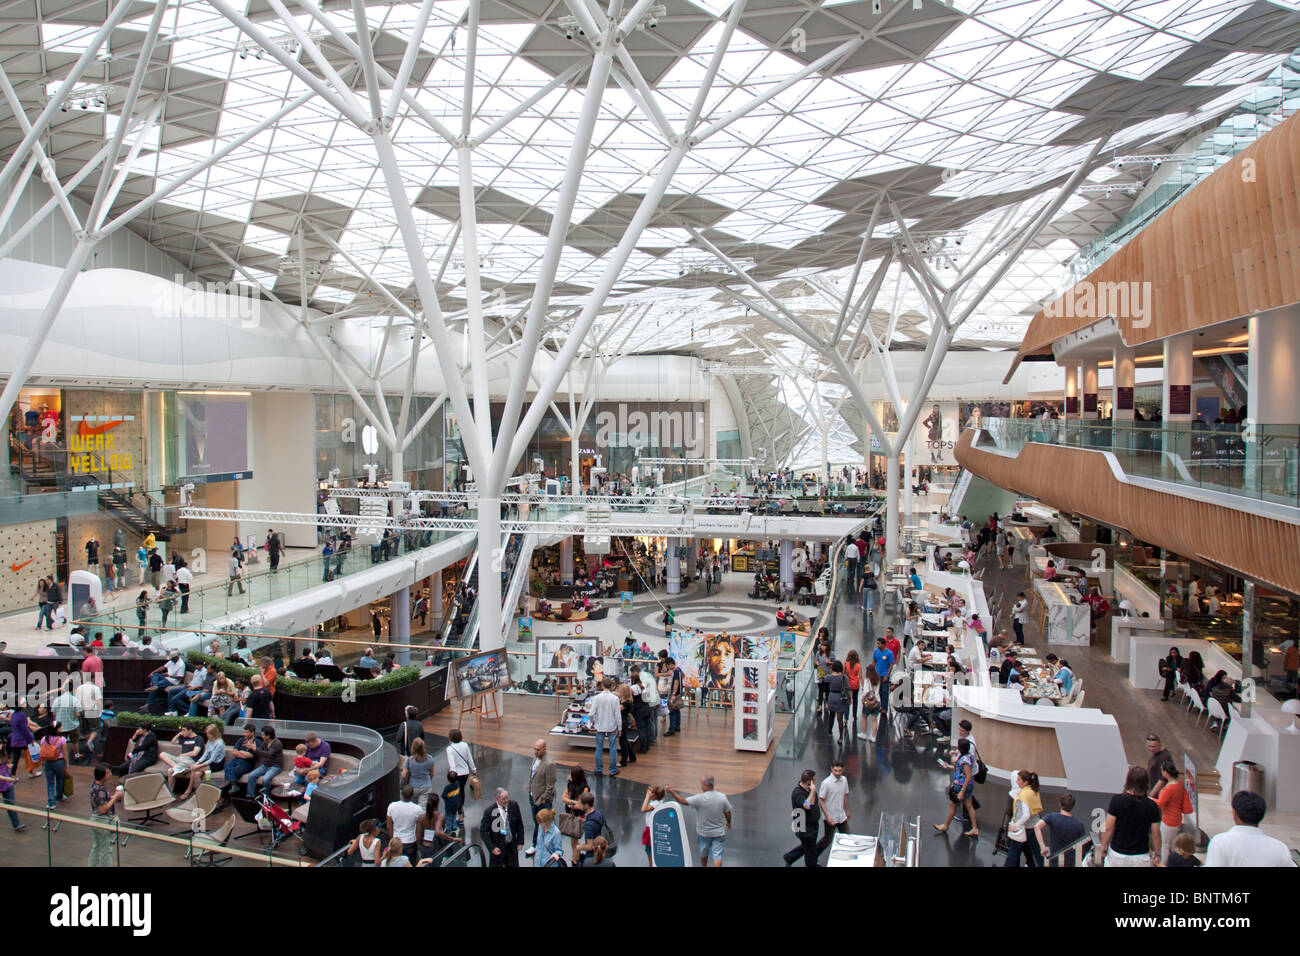 Un atrium central - Westfield Shopping Centre - Shepherd's Bush - Londres Banque D'Images